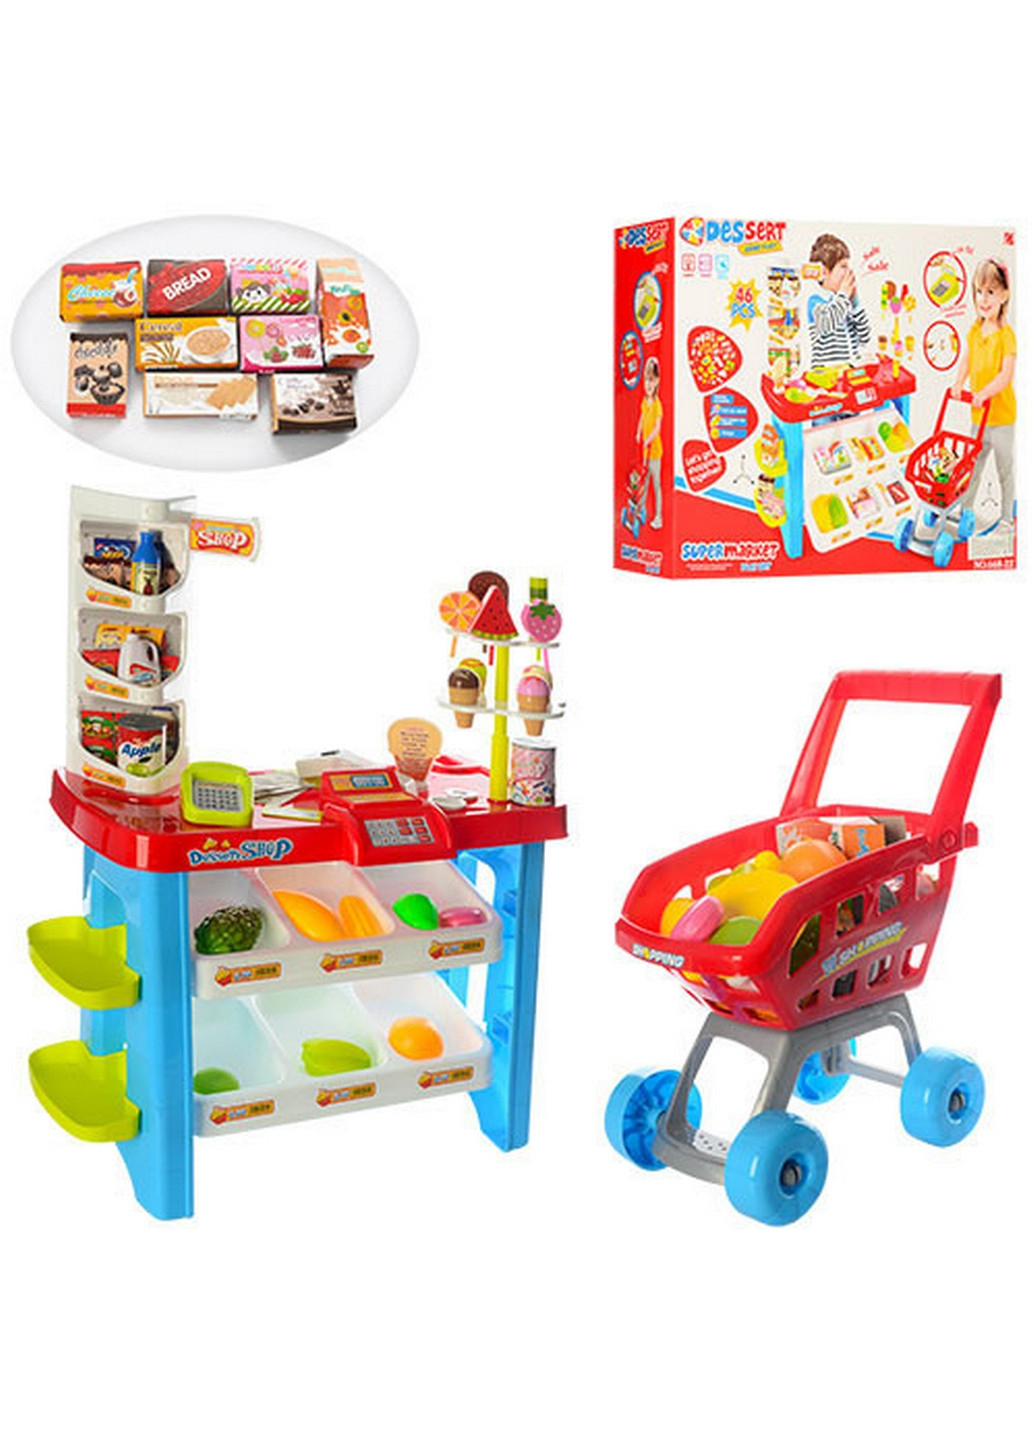 Детский игровой набор магазин с корзинкой продуктов 57х45х17 см Metr+ (260514058)